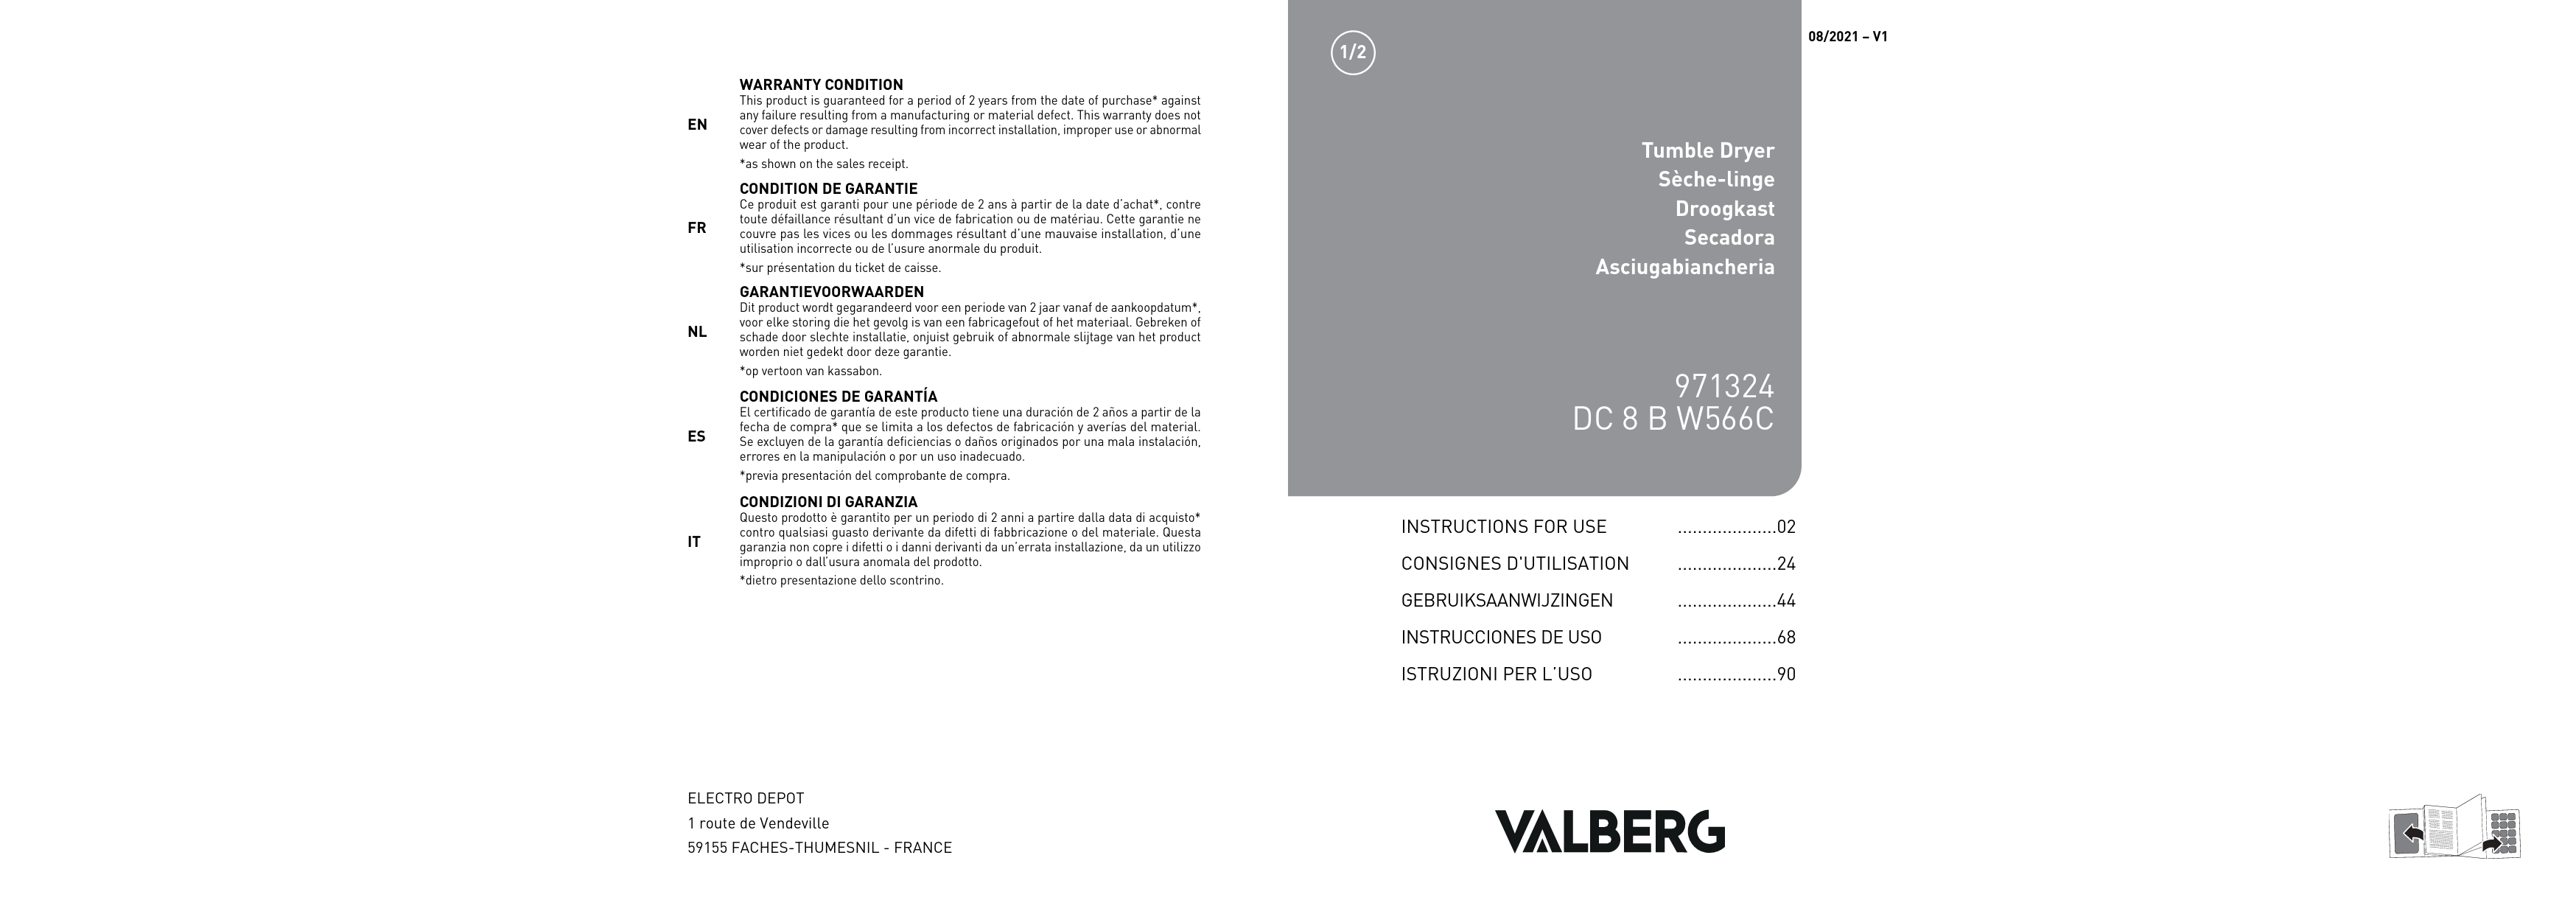 Notice sèche-linge VALBERG DC 8 B W566C Trouver une solution à un problème  VALBERG DC 8 B W566C mode d'emploi VALBERG DC 8 B W566C Français